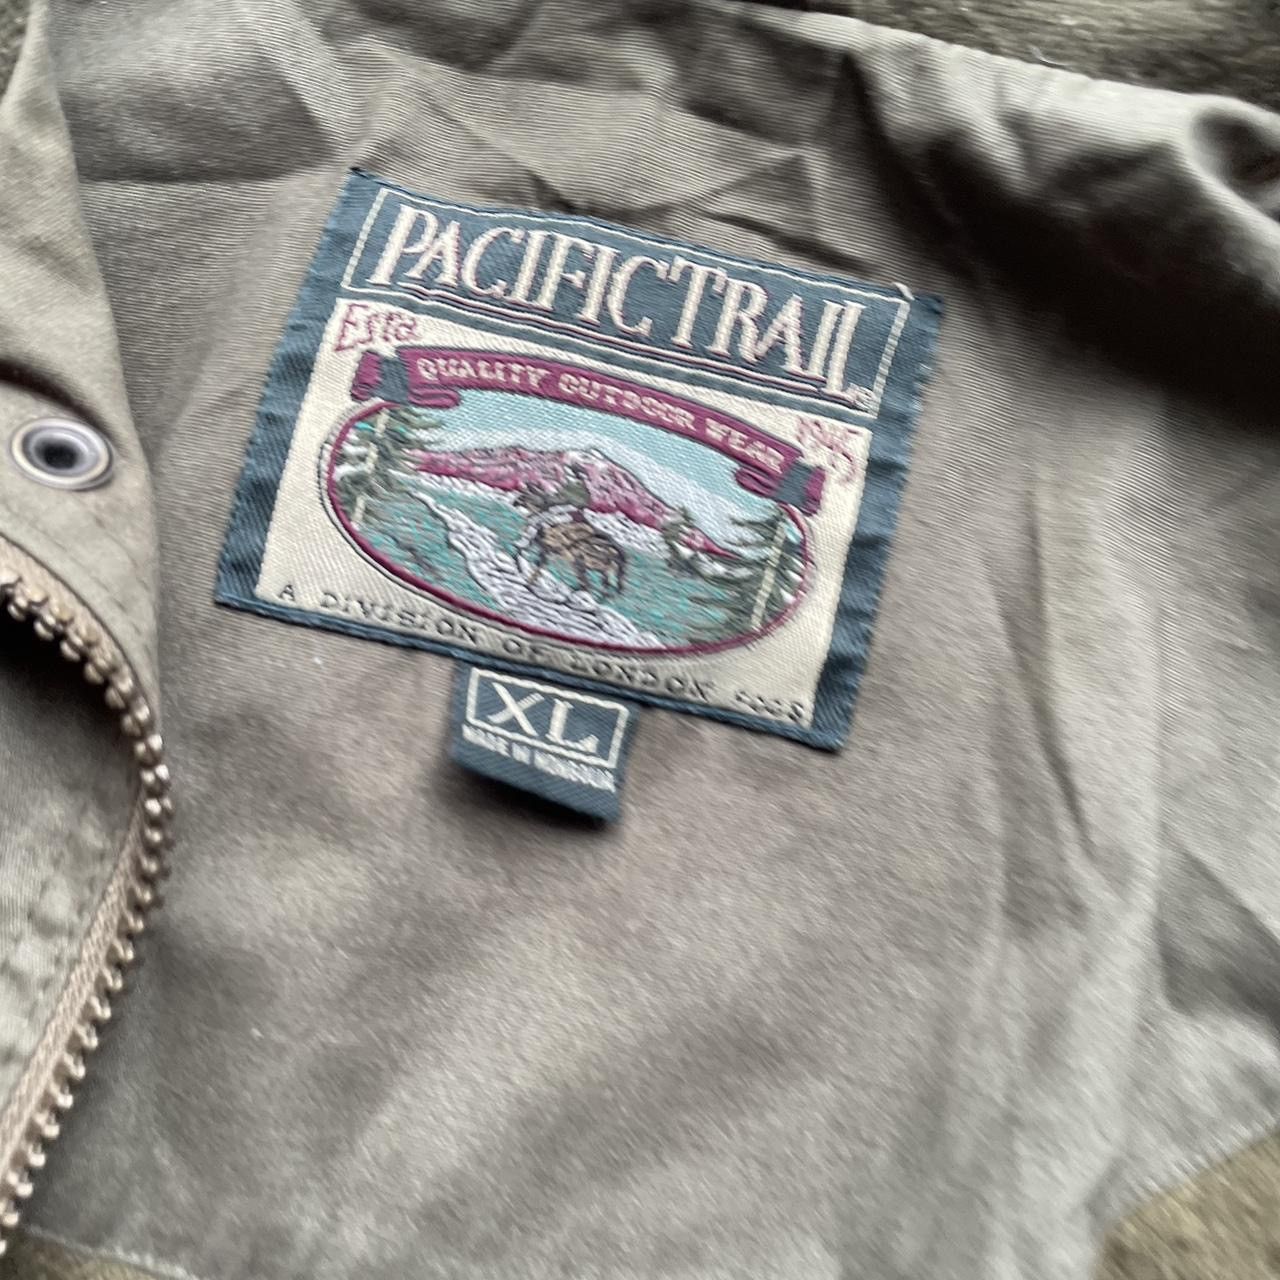 Pacific Trail gorpcore streetwear pacific trail bomber jacket size XL Size US XL / EU 56 / 4 - 3 Thumbnail